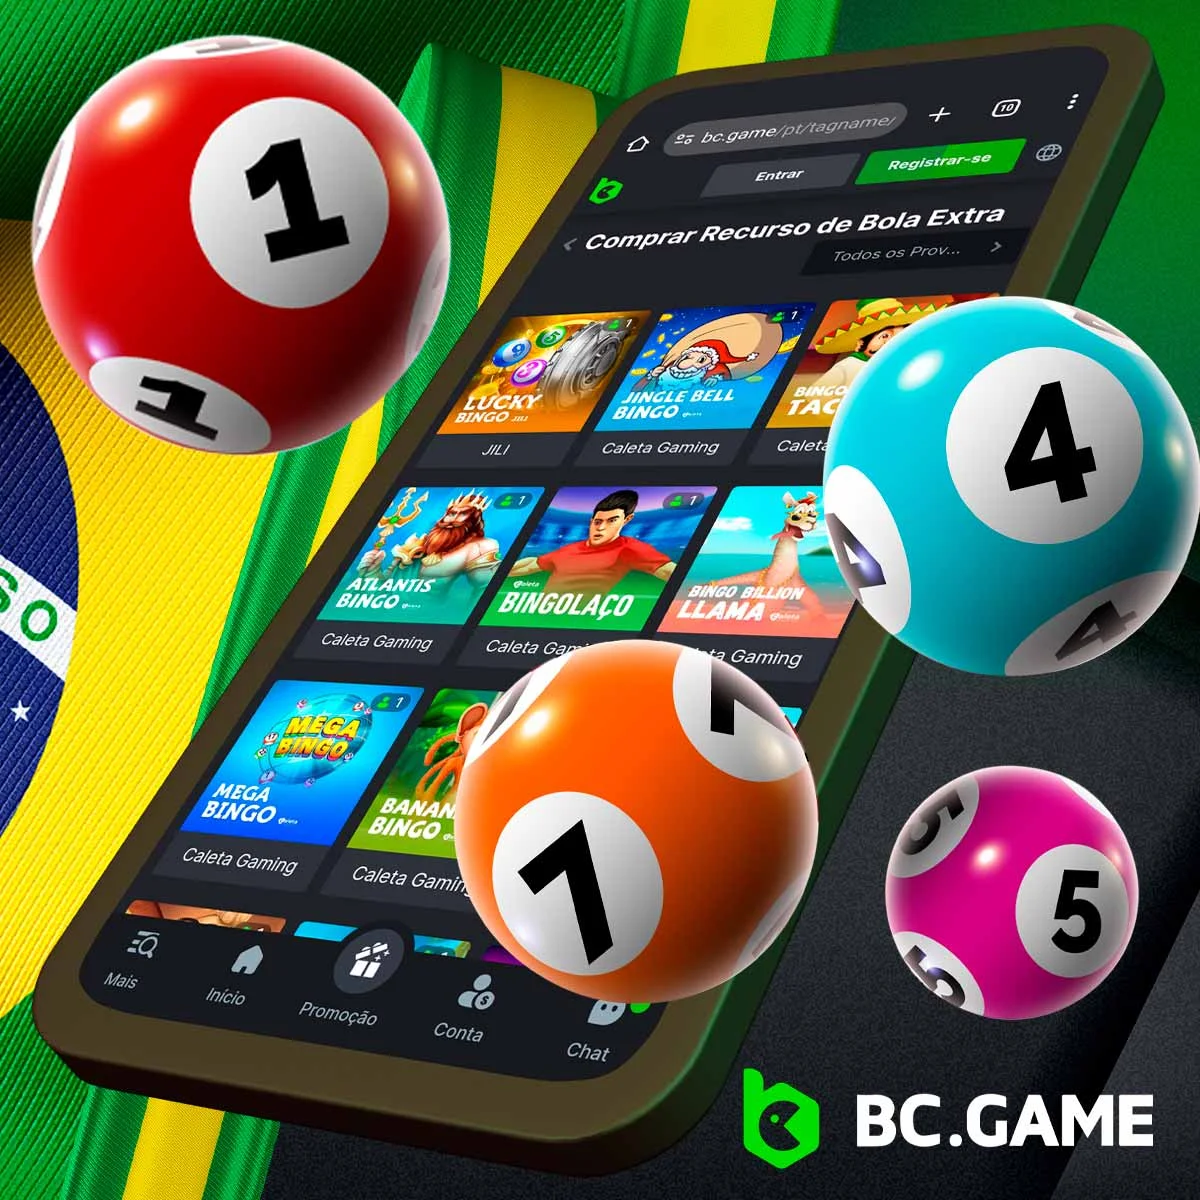 Como é que o Bingo funciona na plataforma BC Game?